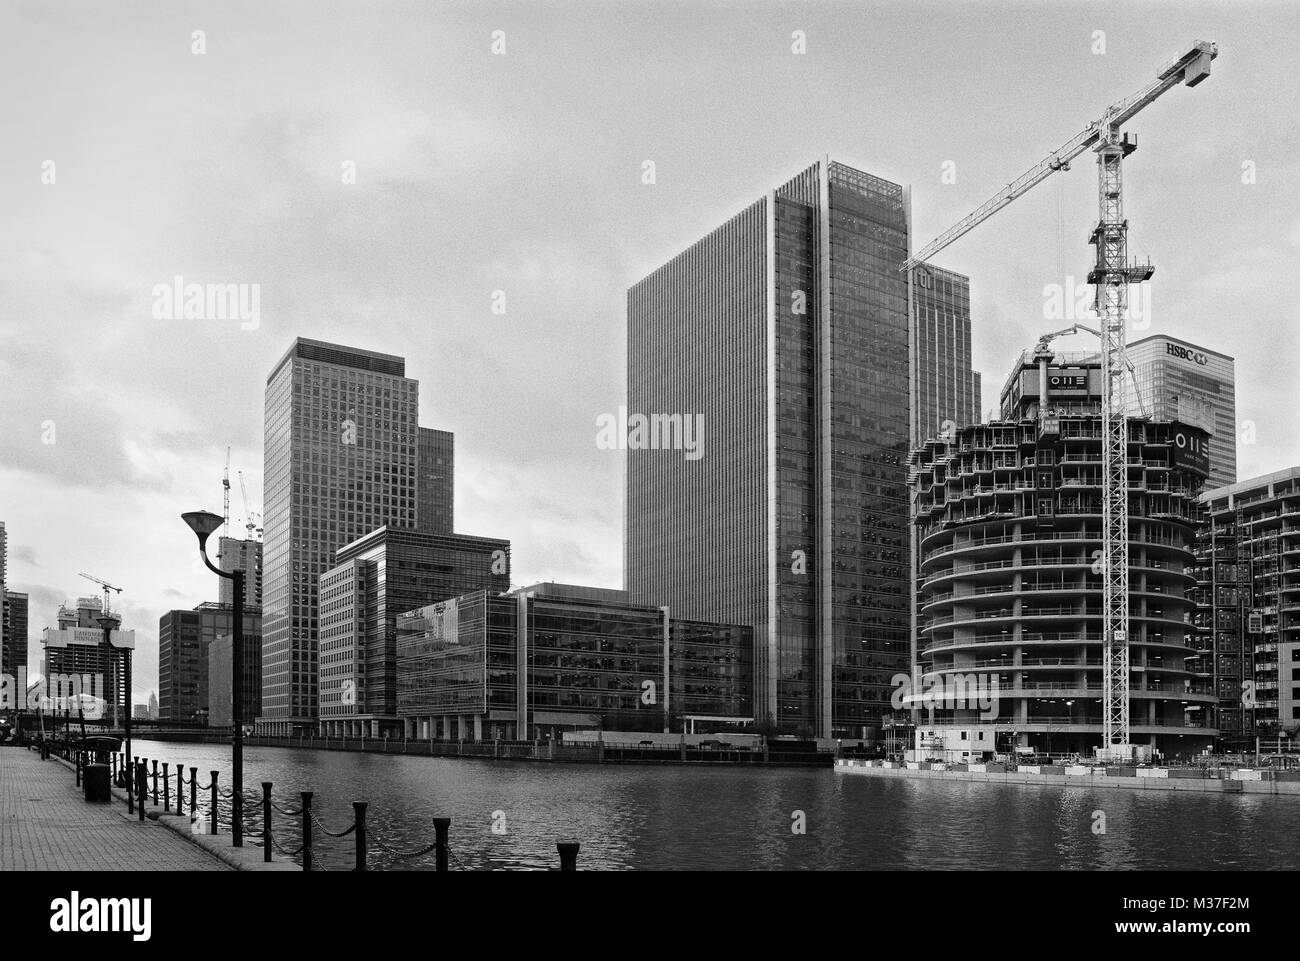 Dock Sud, Canary Wharf, London UK, avec des bâtiments en construction Banque D'Images